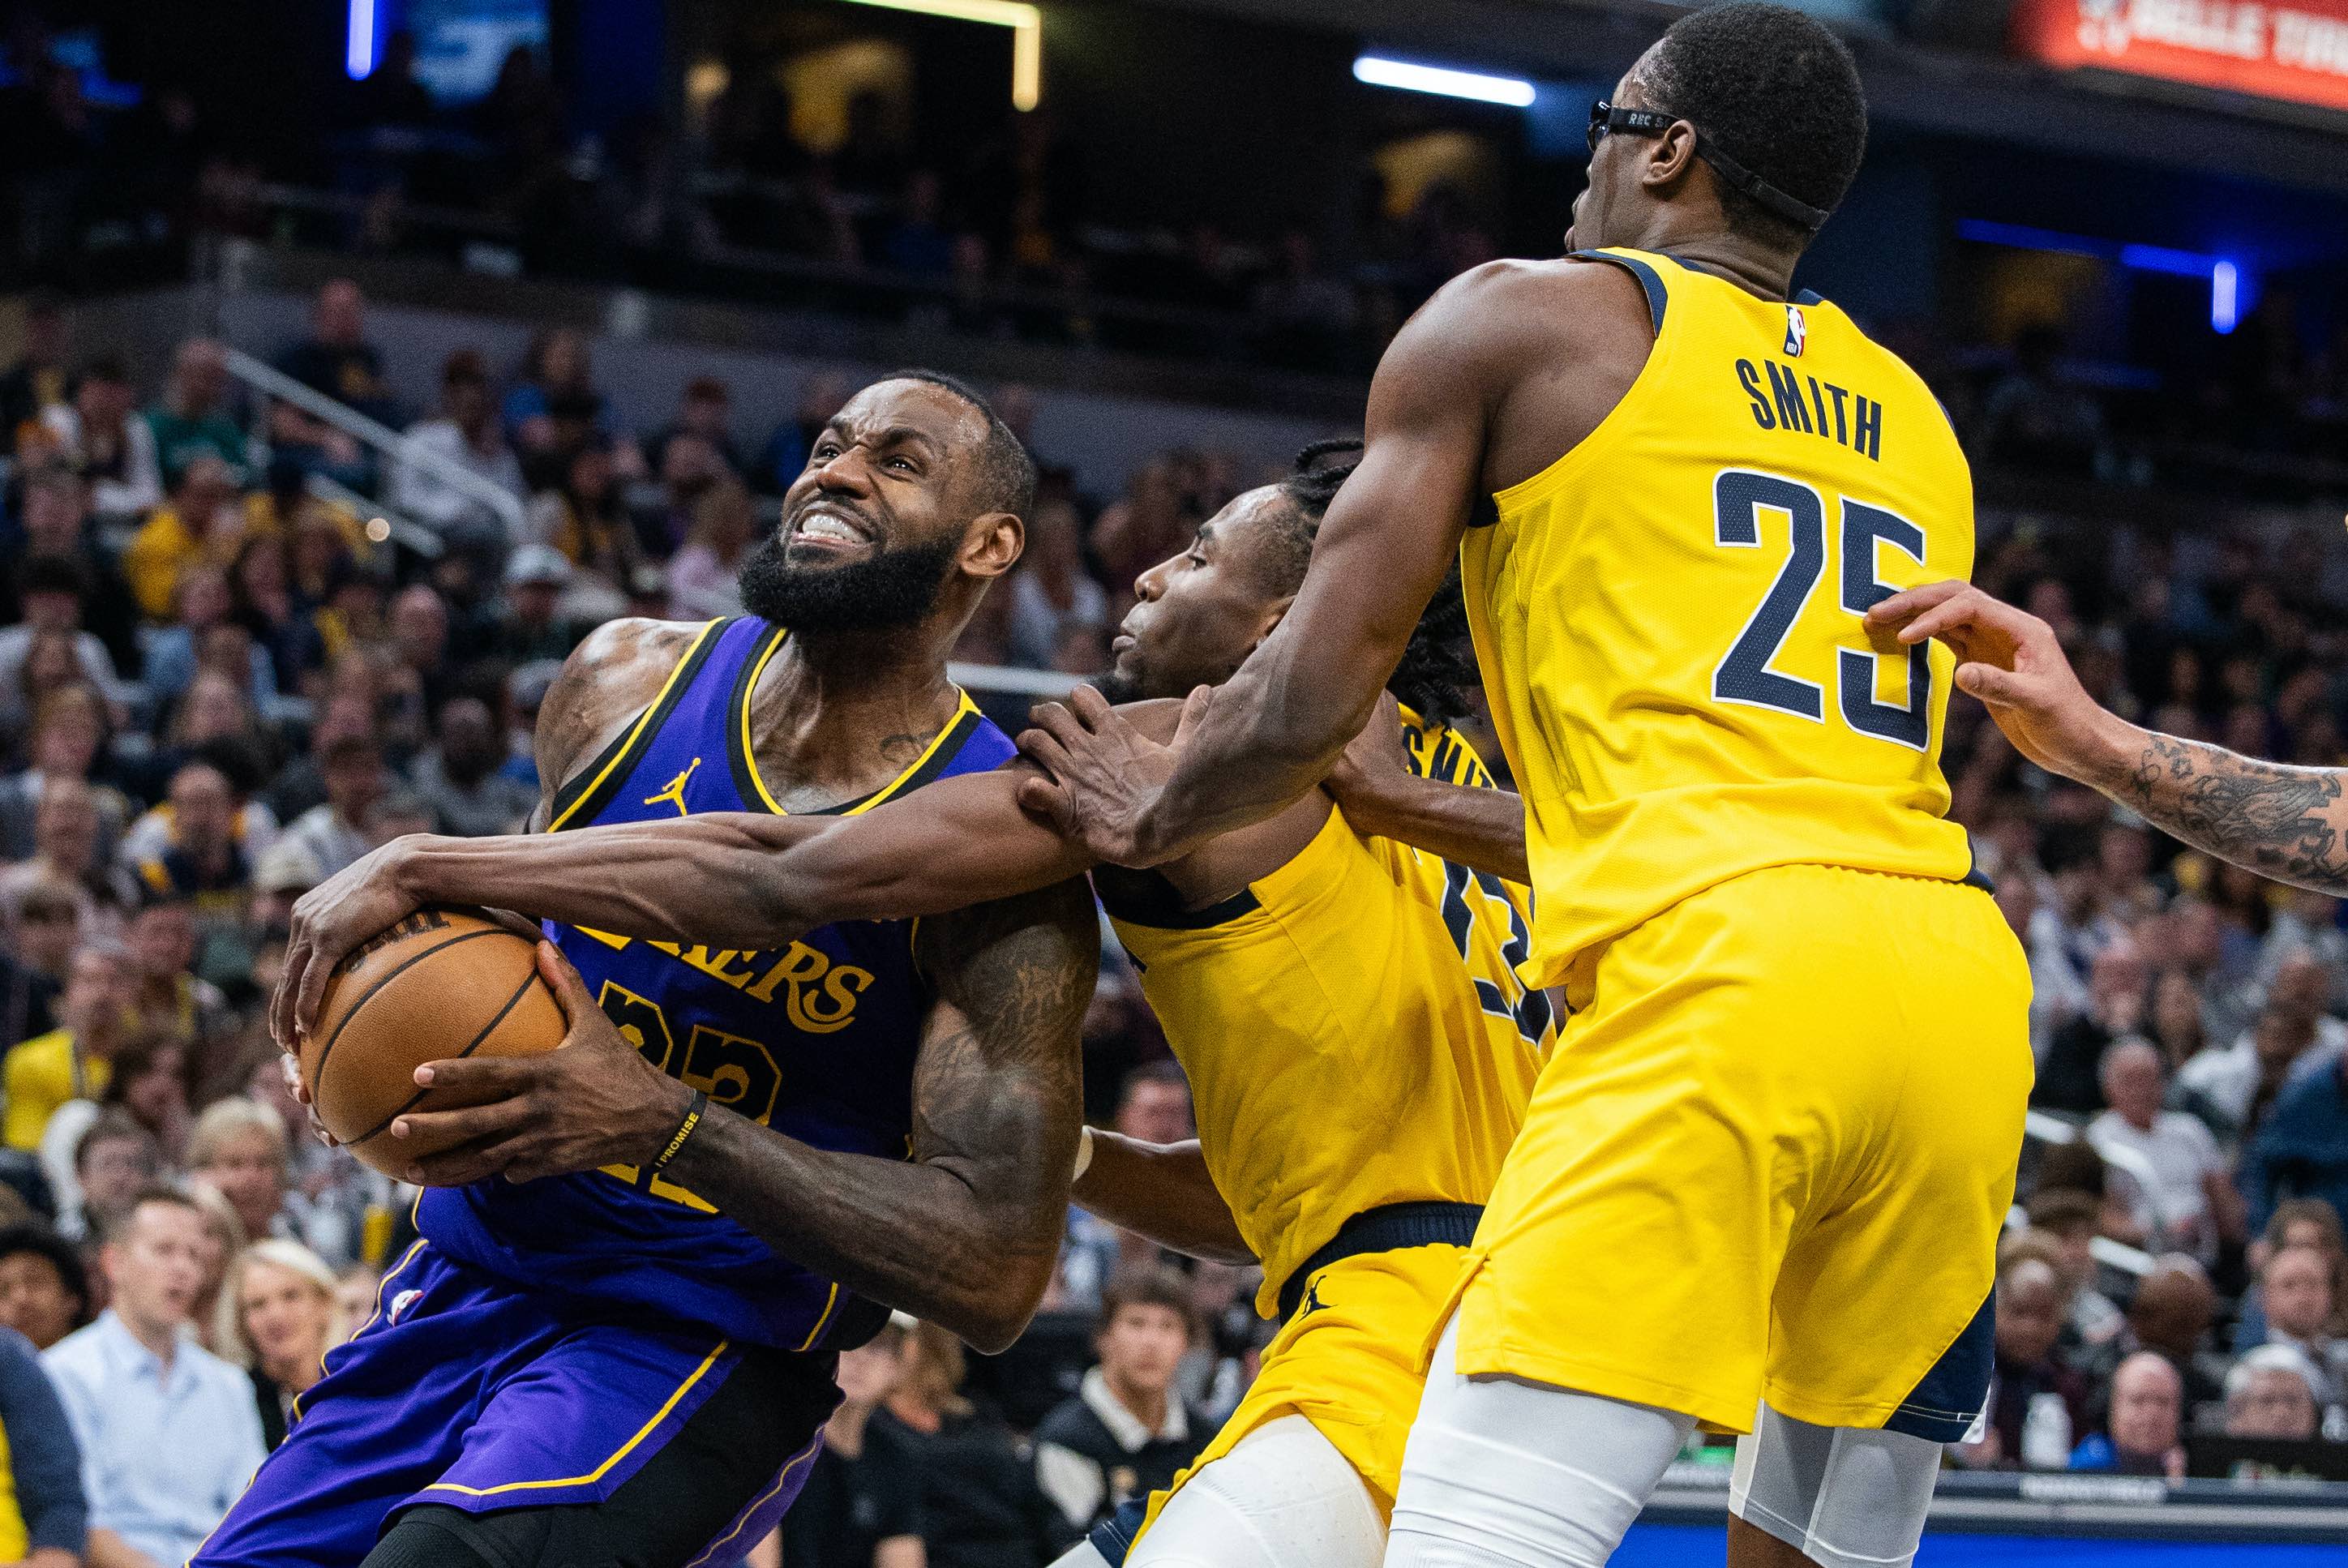 NBA: Pacers’ defense steps up, halts Lakers’ win streak